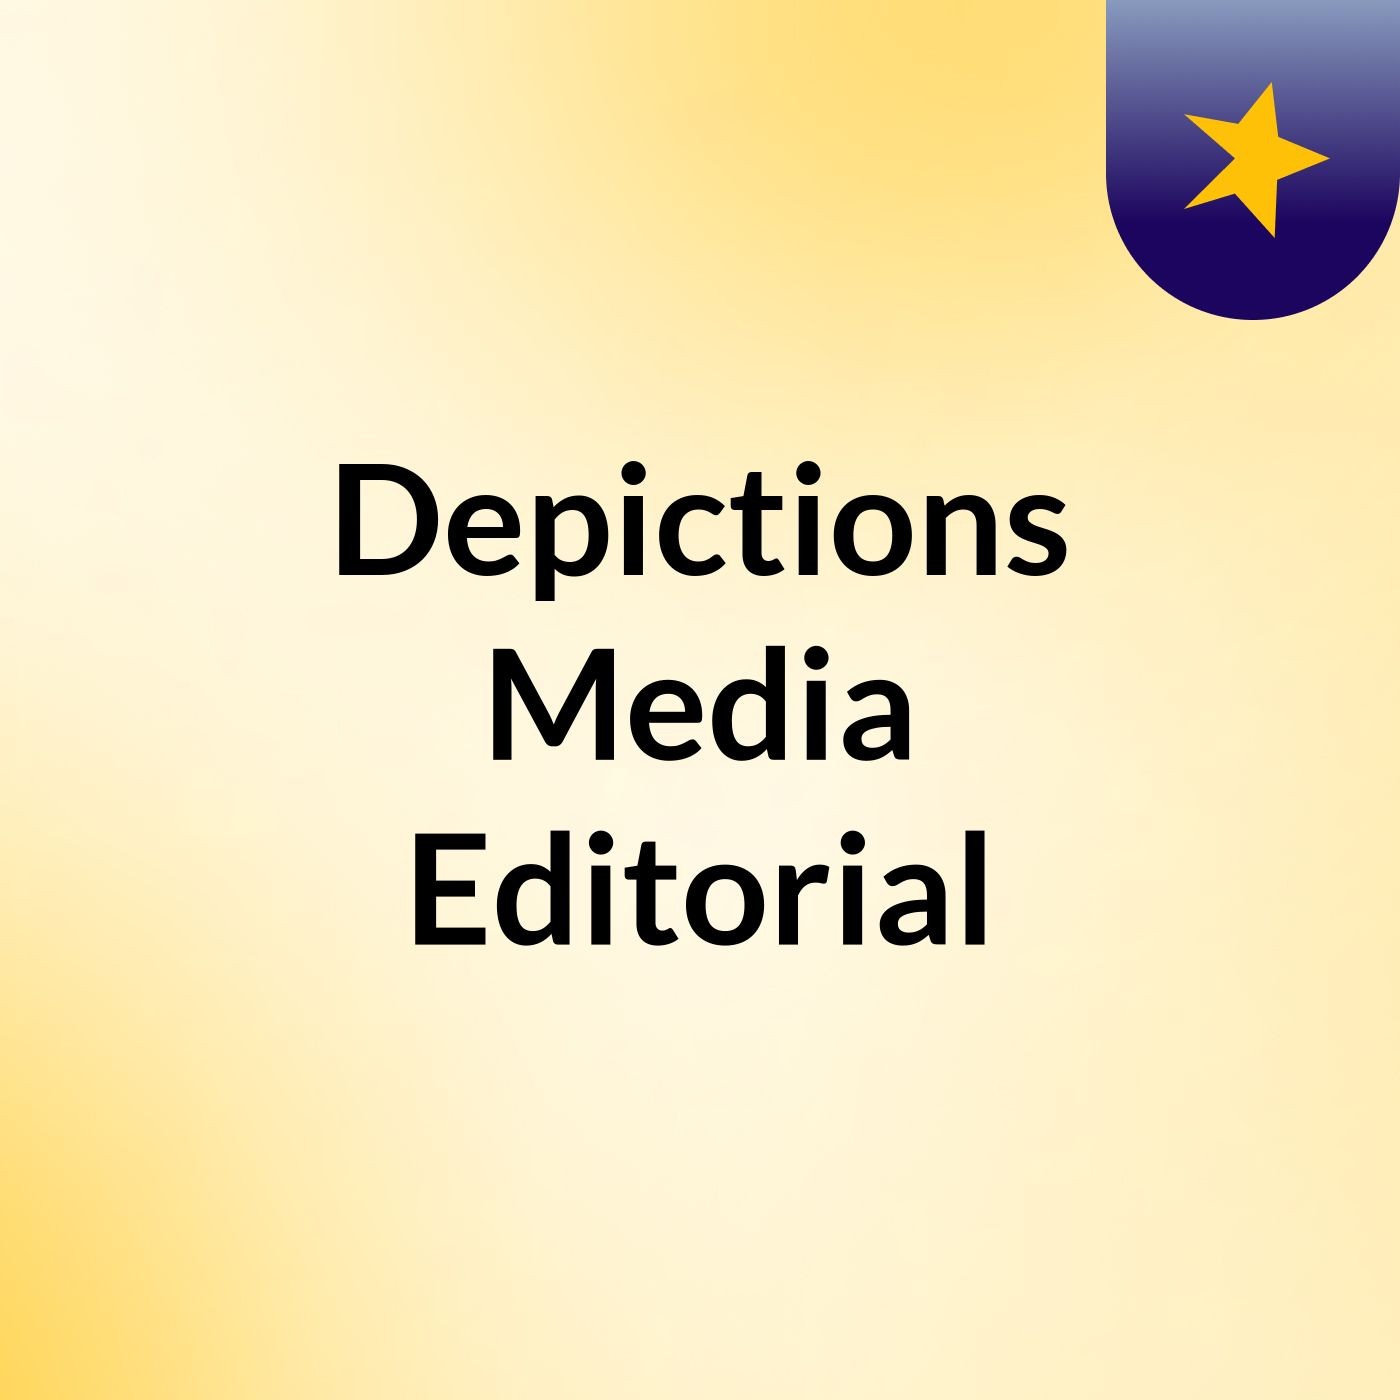 Depictions Media Editorial